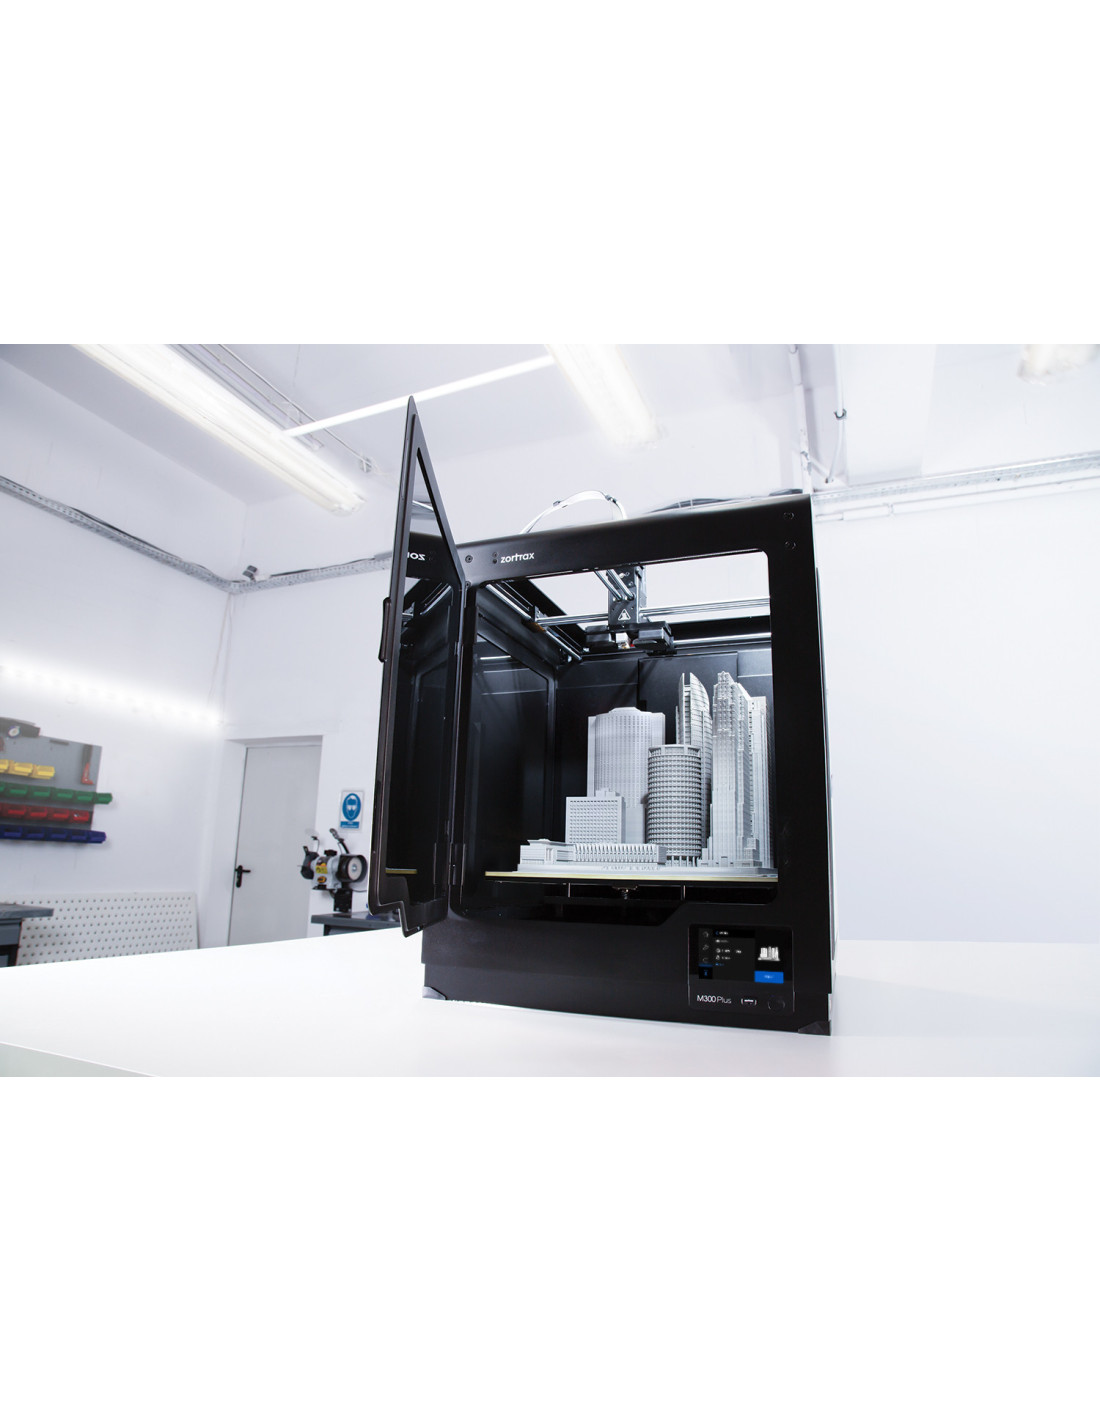 Zortrax M300 Plus - impressora 3D profissional